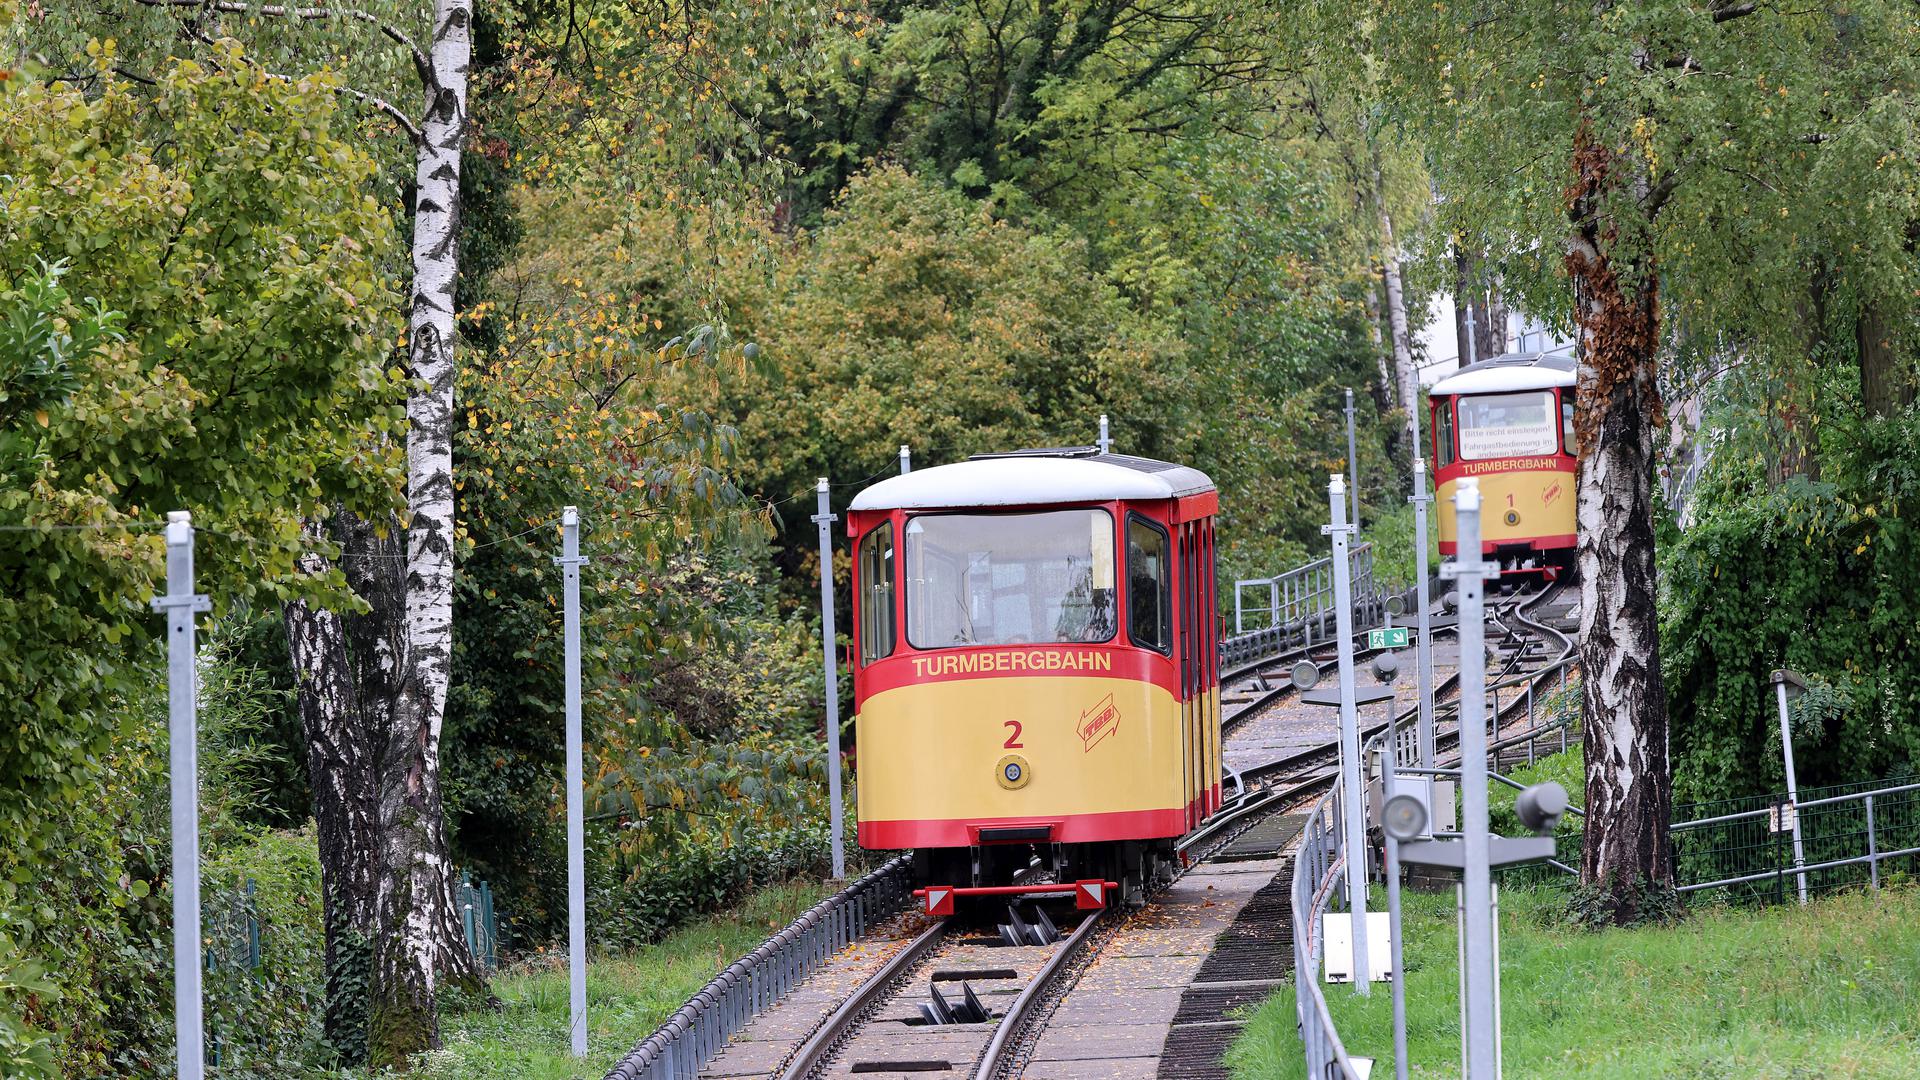 Am 21. 10.2022 fährt die Turmbergbahn in Durlach nach normalem Sommerfahrplan, der zehn Tage später, am 31. Oktober, endet. Ursprünglich hätte dann für immer Schluss sein sollen. Doch die Betriebsdauer der ältesten noch betriebenen Stadtseilbahn Deutschlands ist um sechs Monate verlängert.